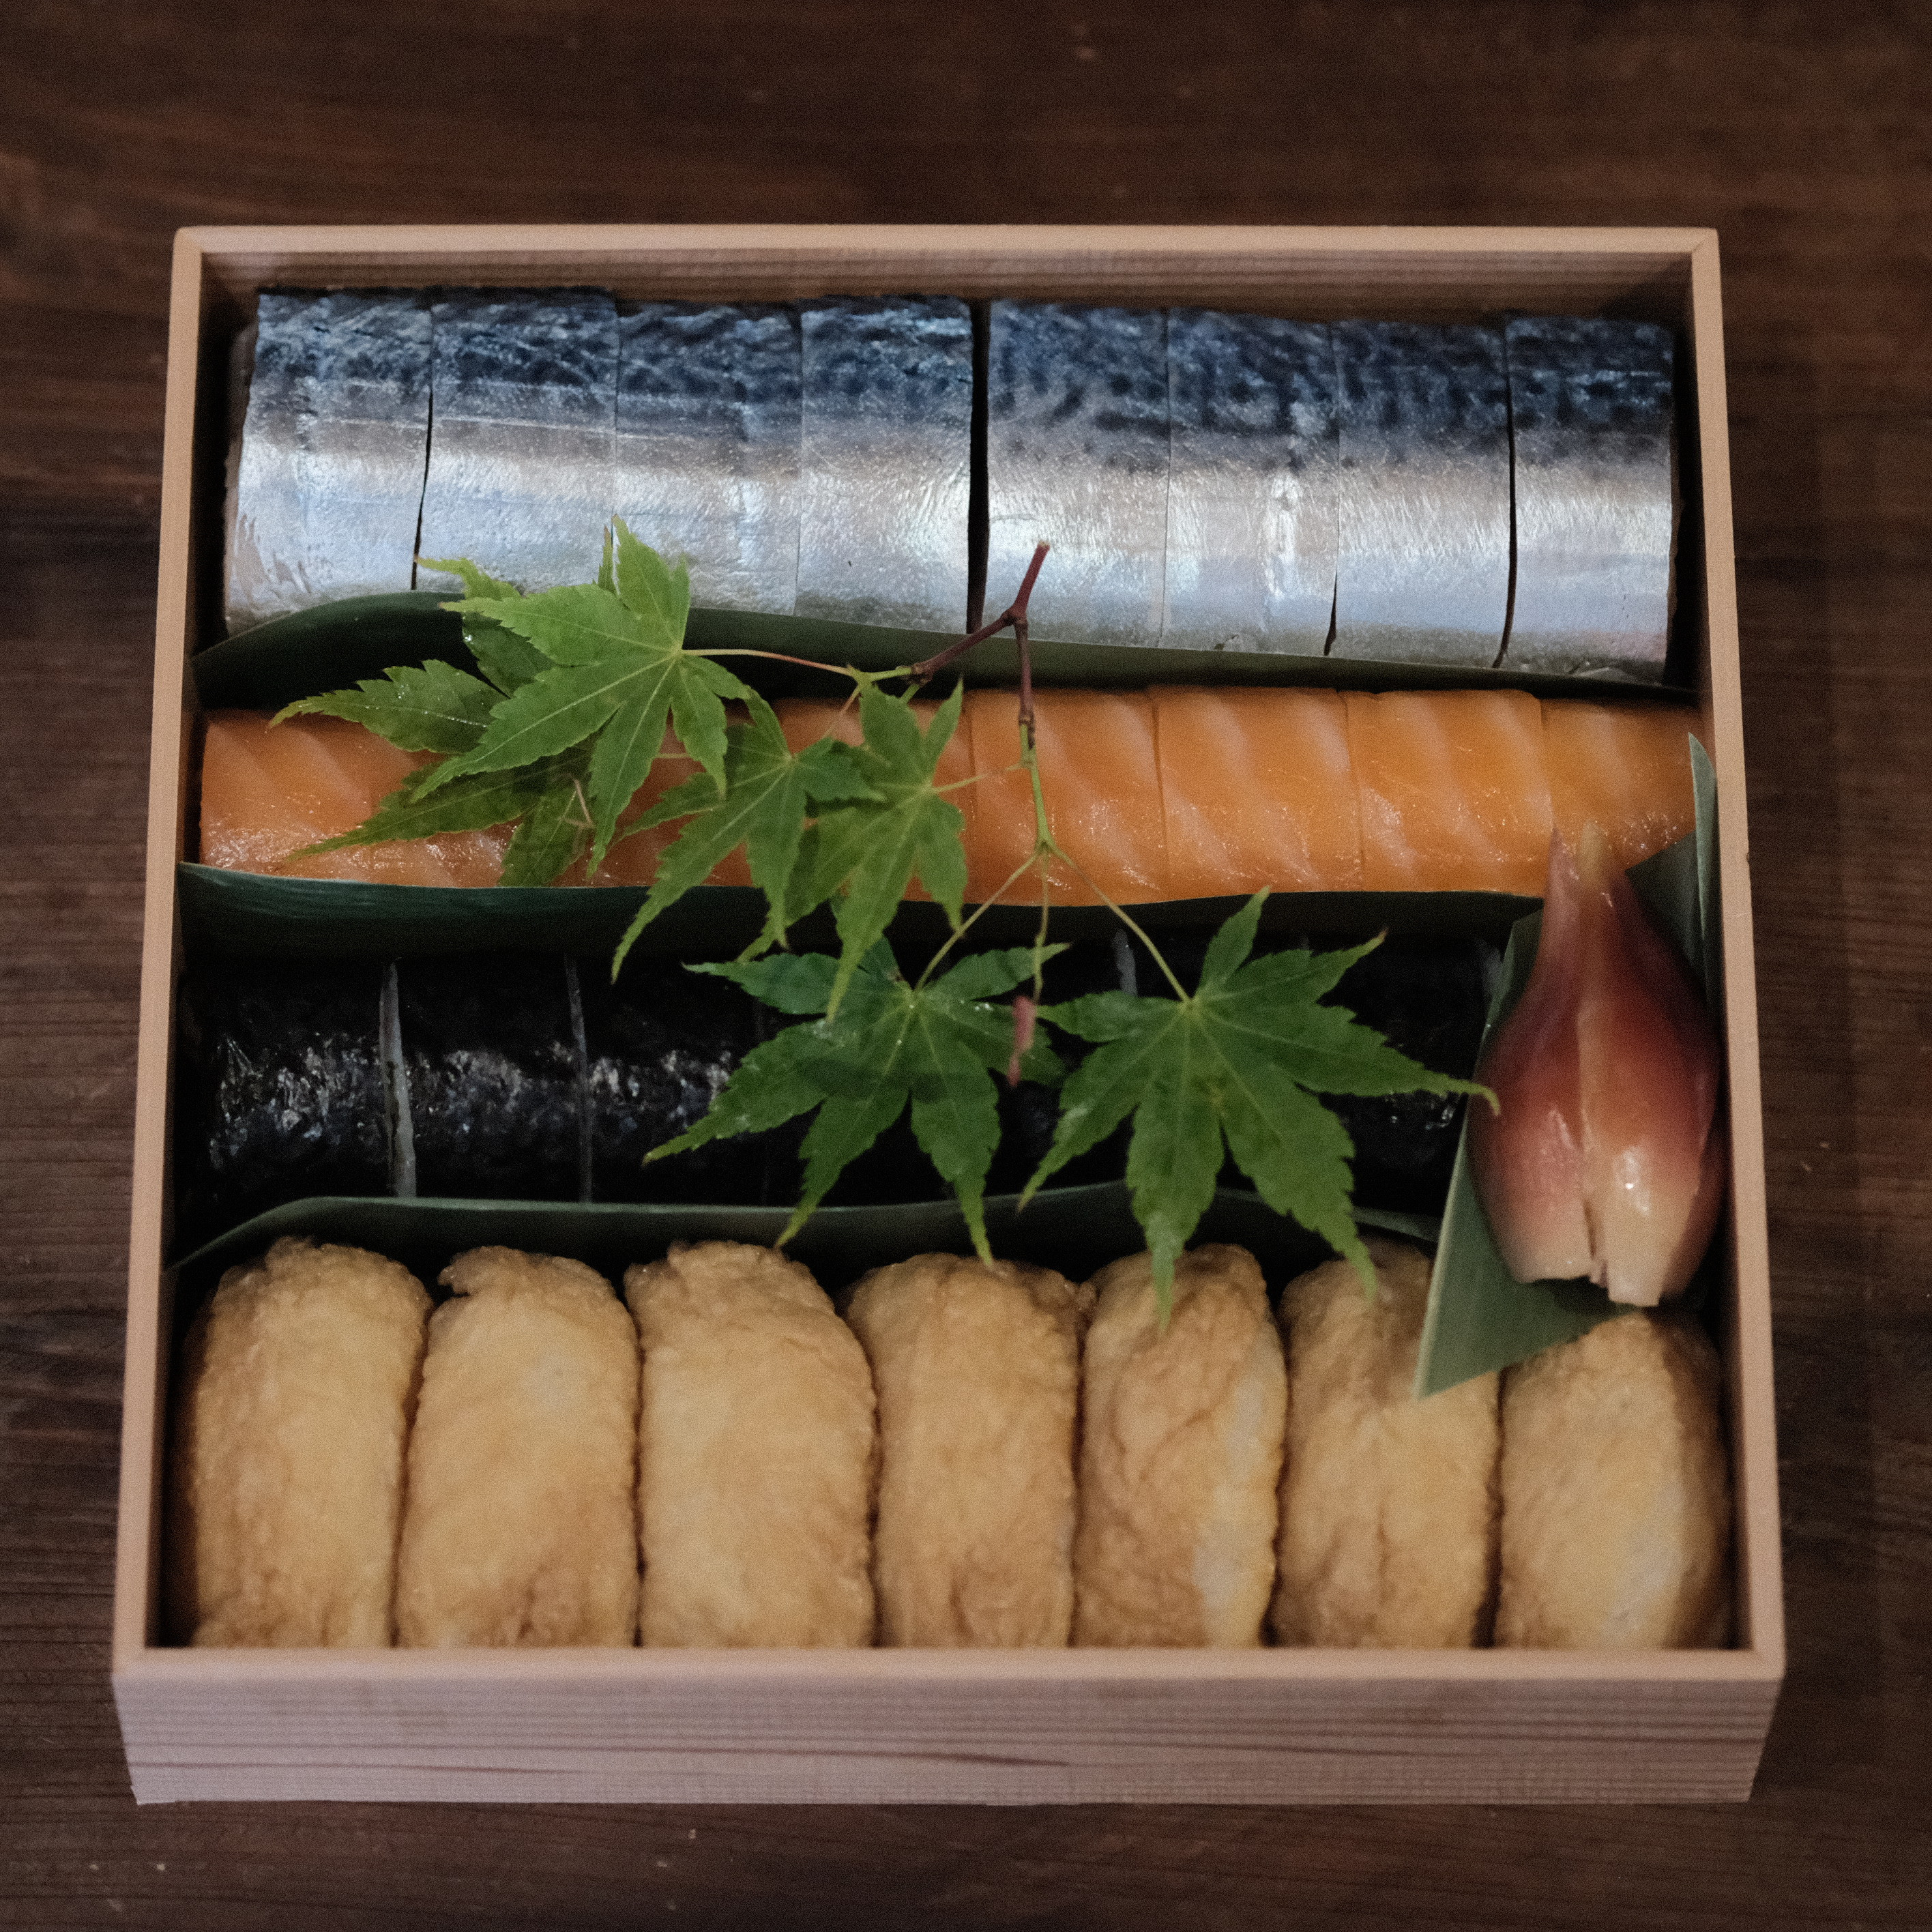 寿司折